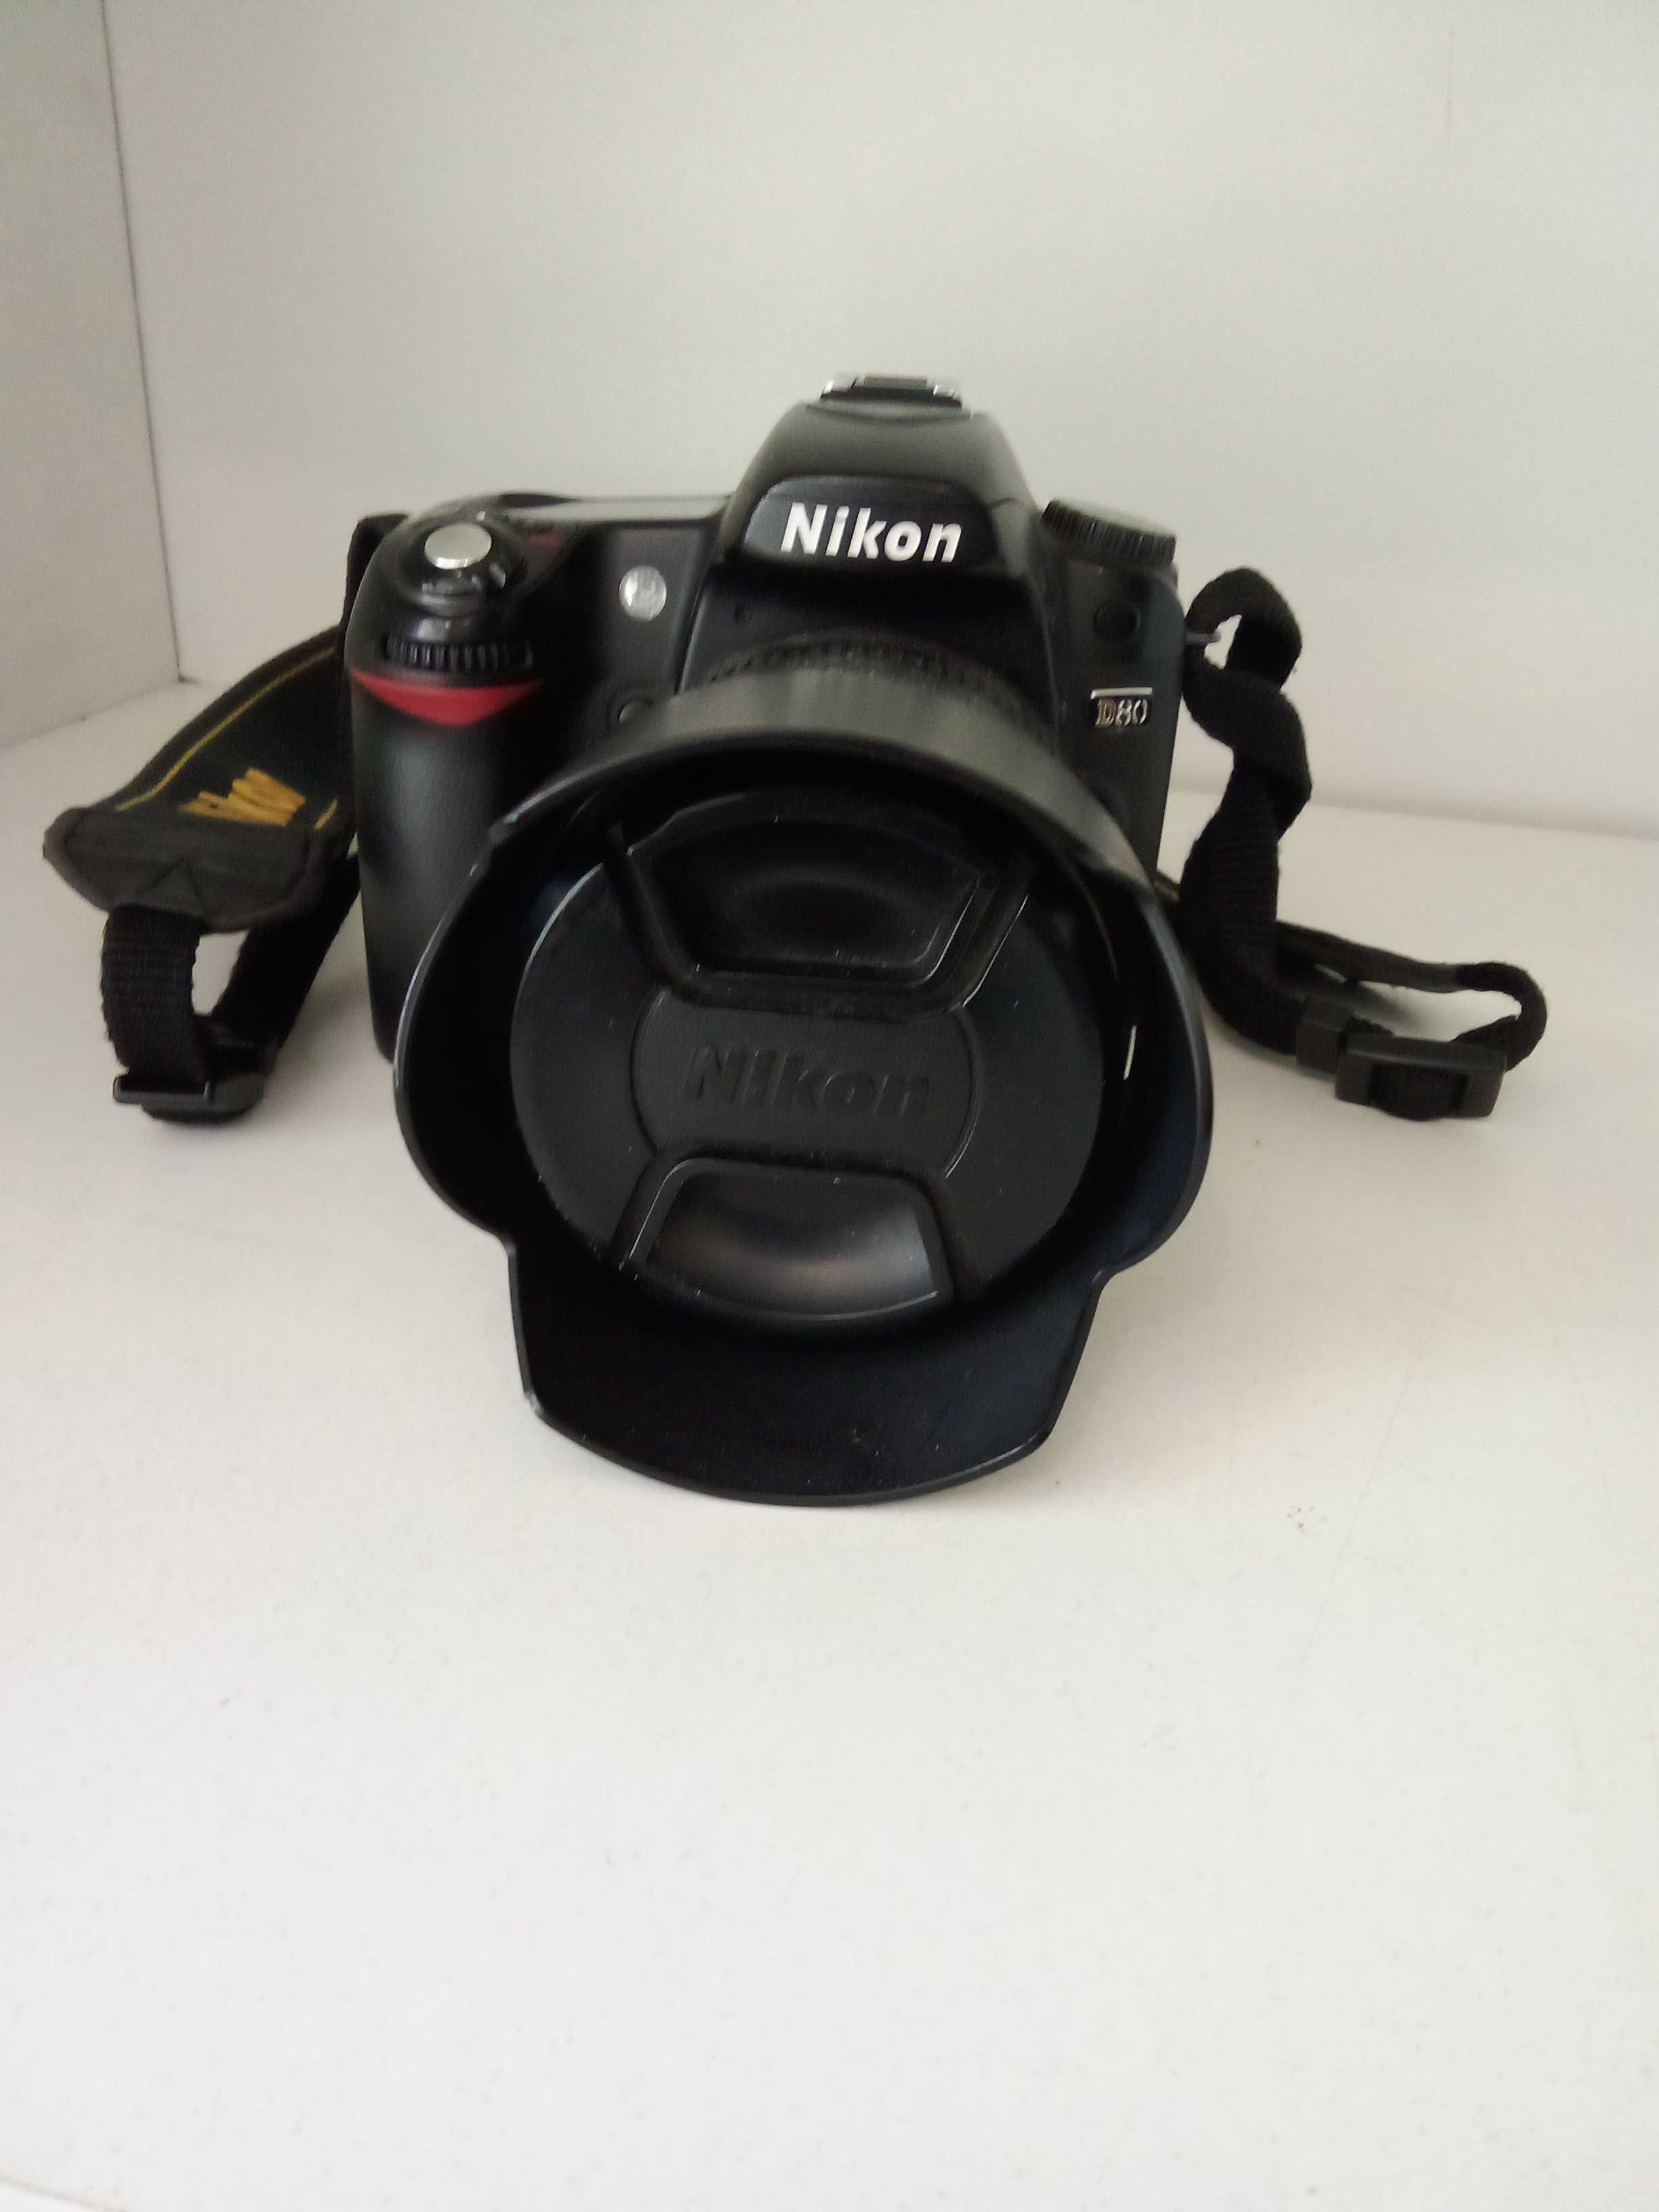 Aparat Nikon D80 i obiektyw 18-70mm 1:3.5-4.5G / Nowy Lombard / Cz-wa